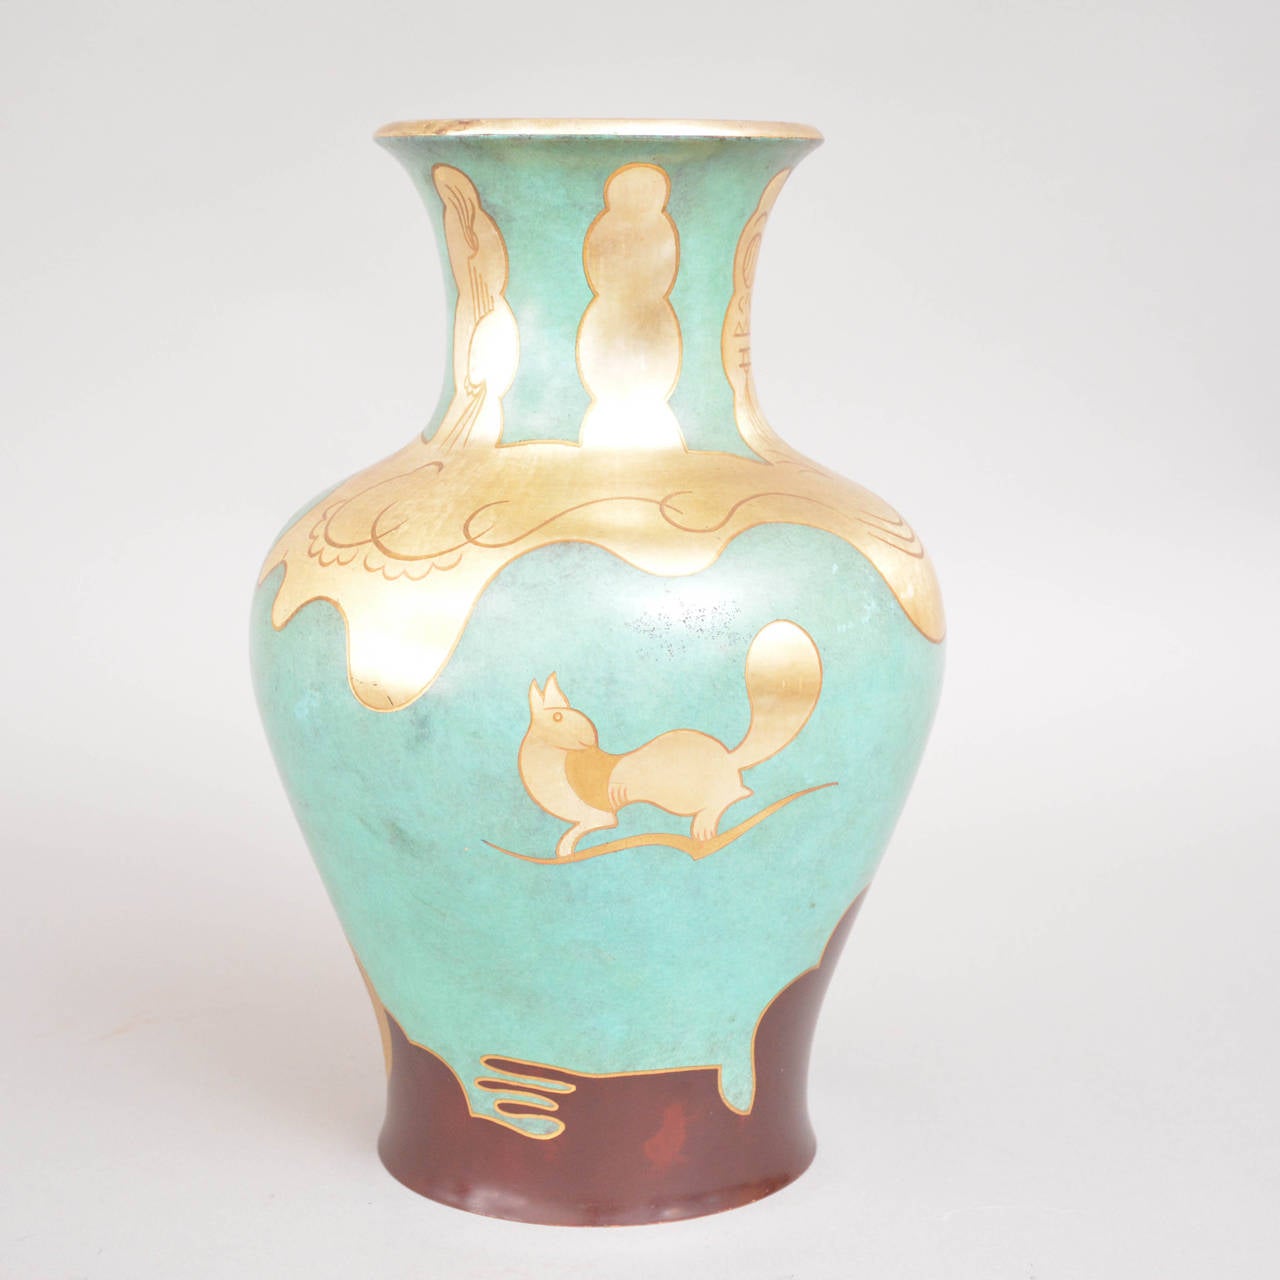 Ikora metal vase. Designed by Paul Haustein for Württembergische Metallwarenfabrik. An exquisite piece of Art Deco at its peak.